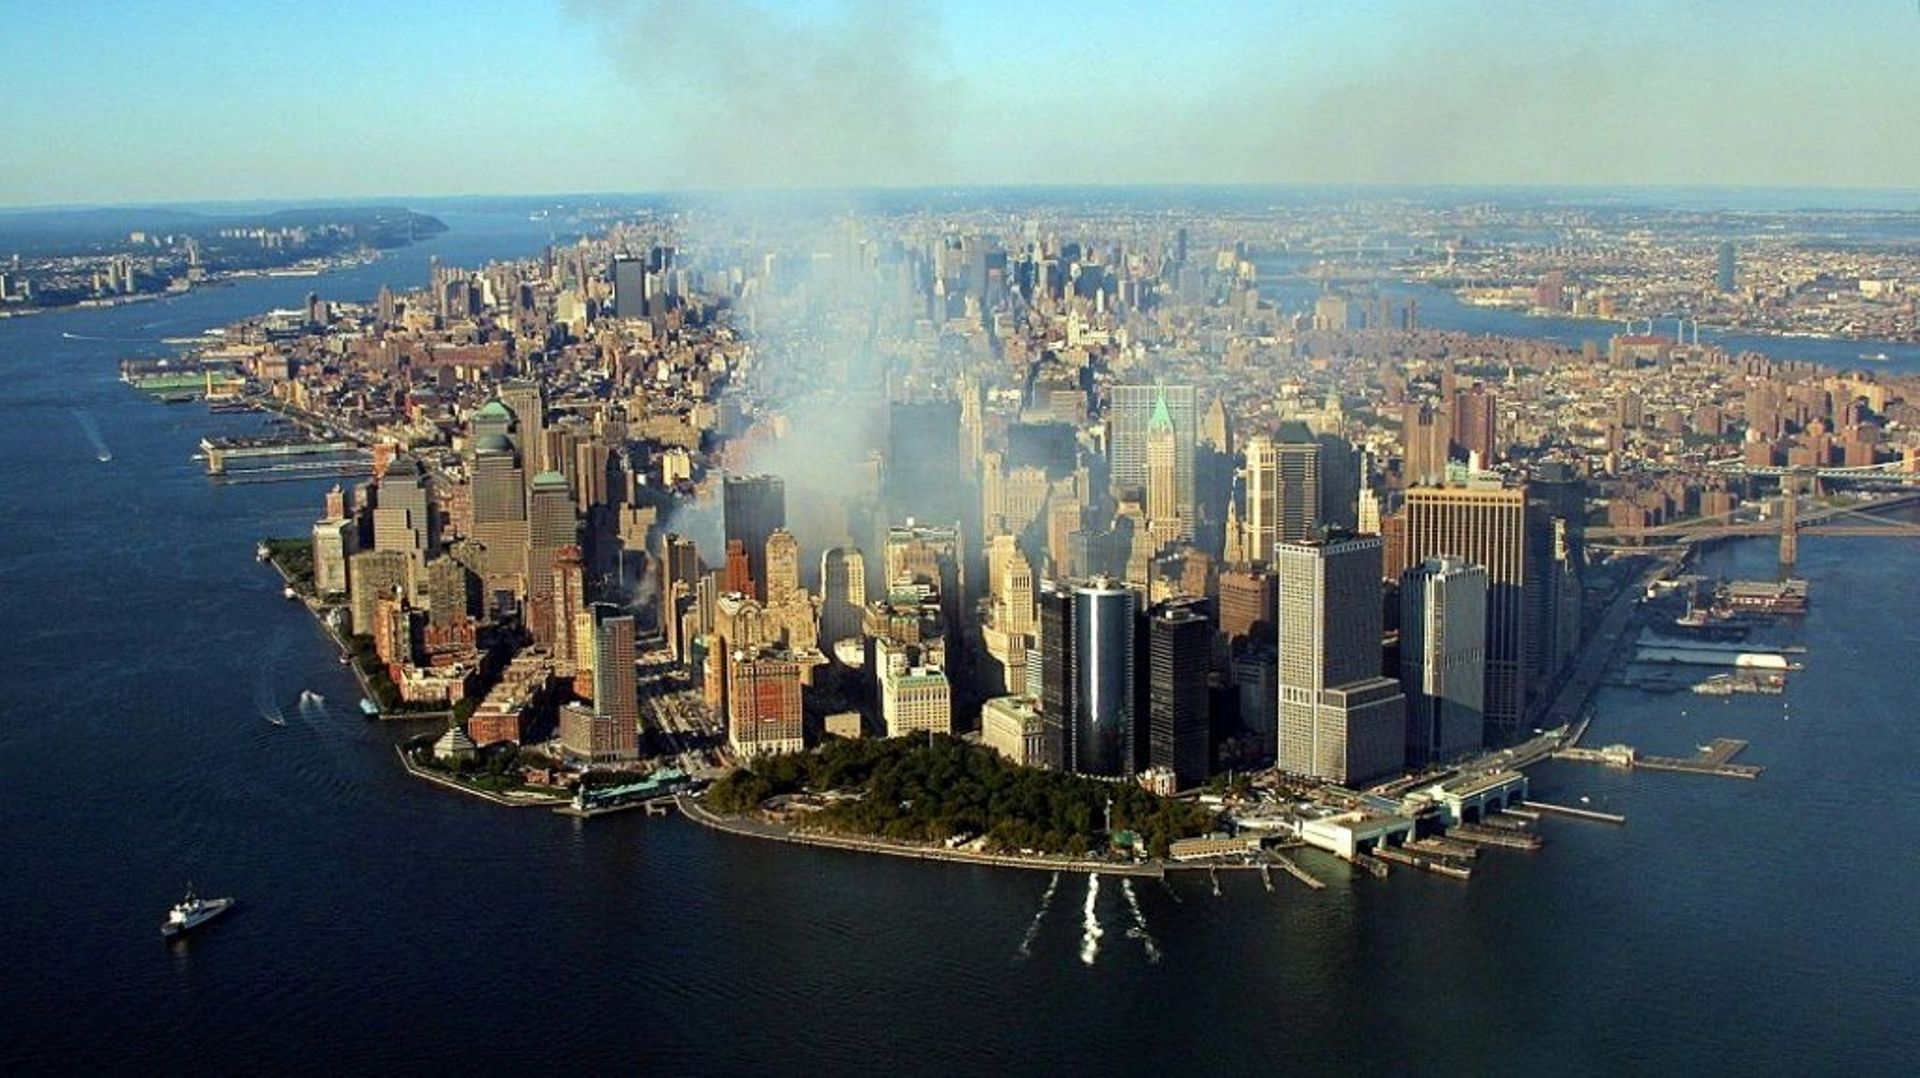 La fumée continue à s'élever de la pointe de Manhattan, le 15 septembre 2001, quatre jours après les attentats
